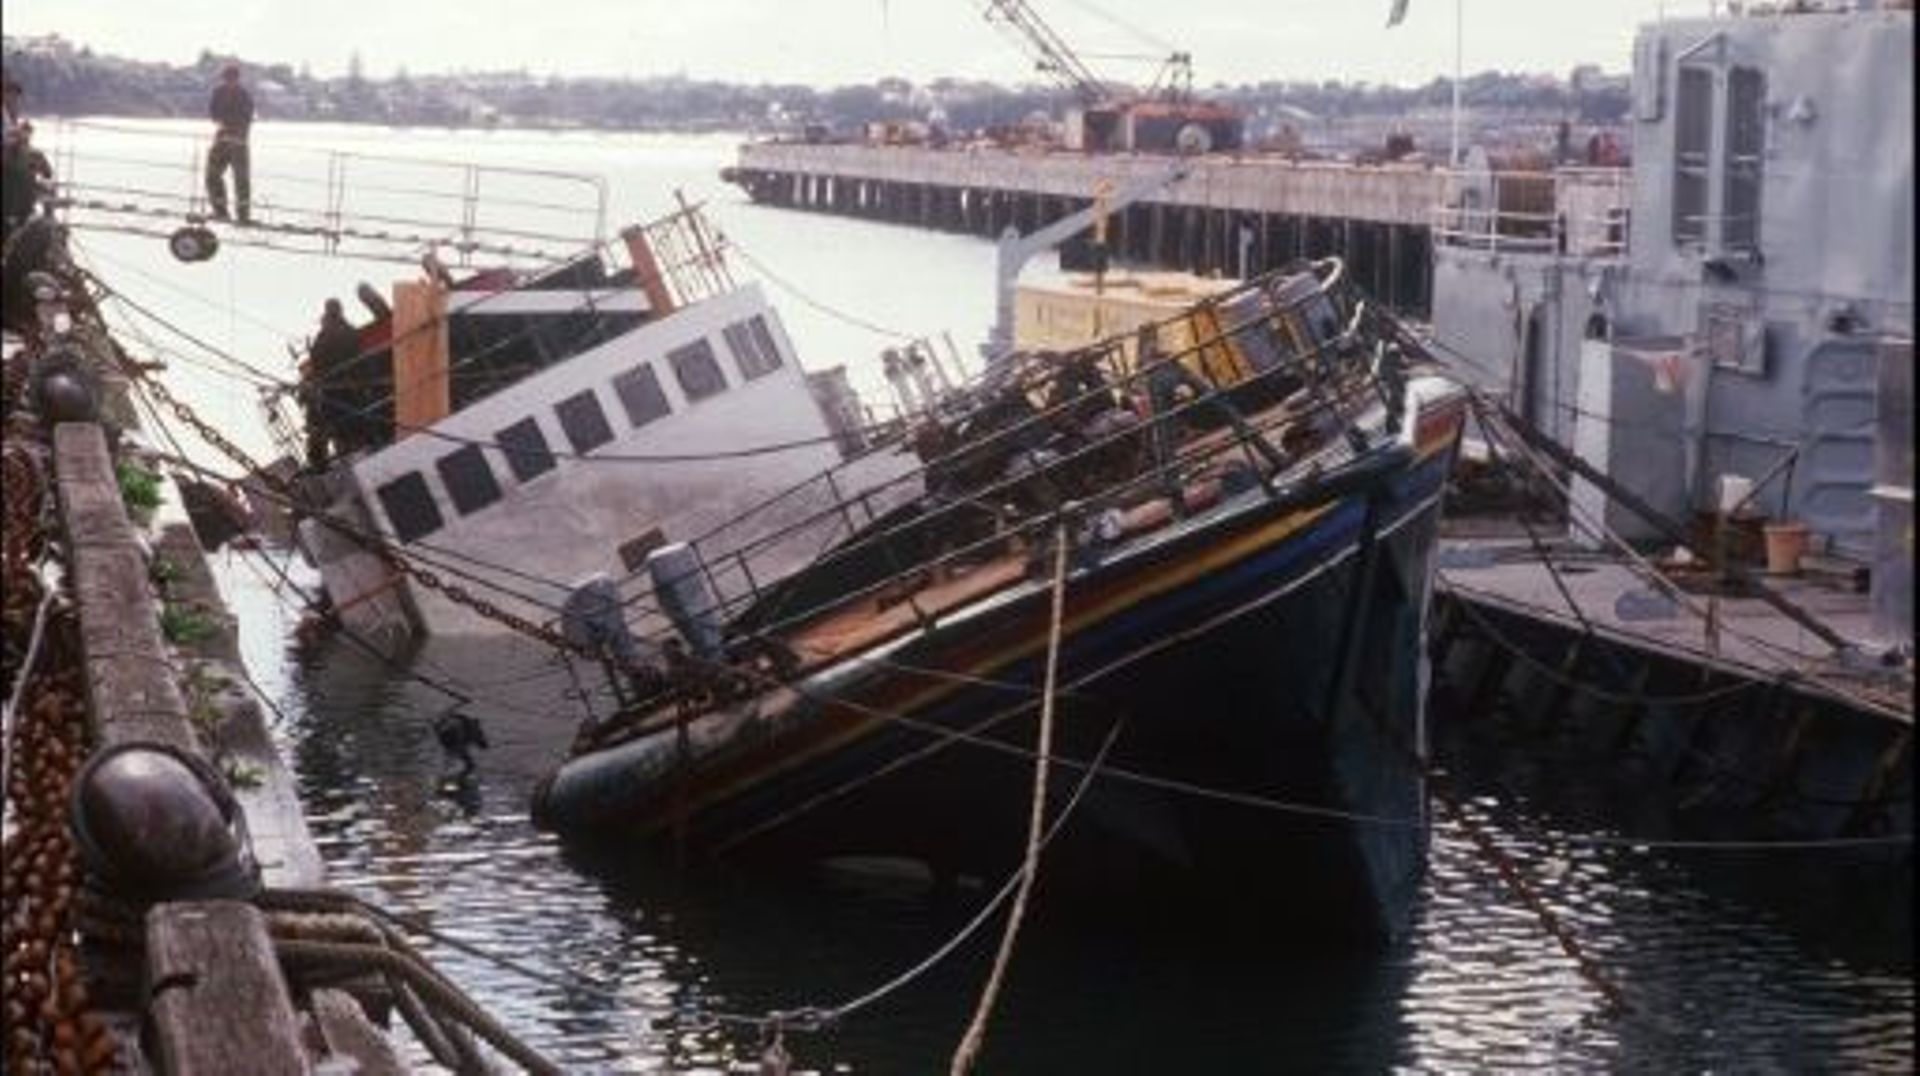 Le Rainbow Warrior, coulé le 10 juillet 1985 en baie d'Auckland, est amarré dans le port de la ville le 14 août 1985